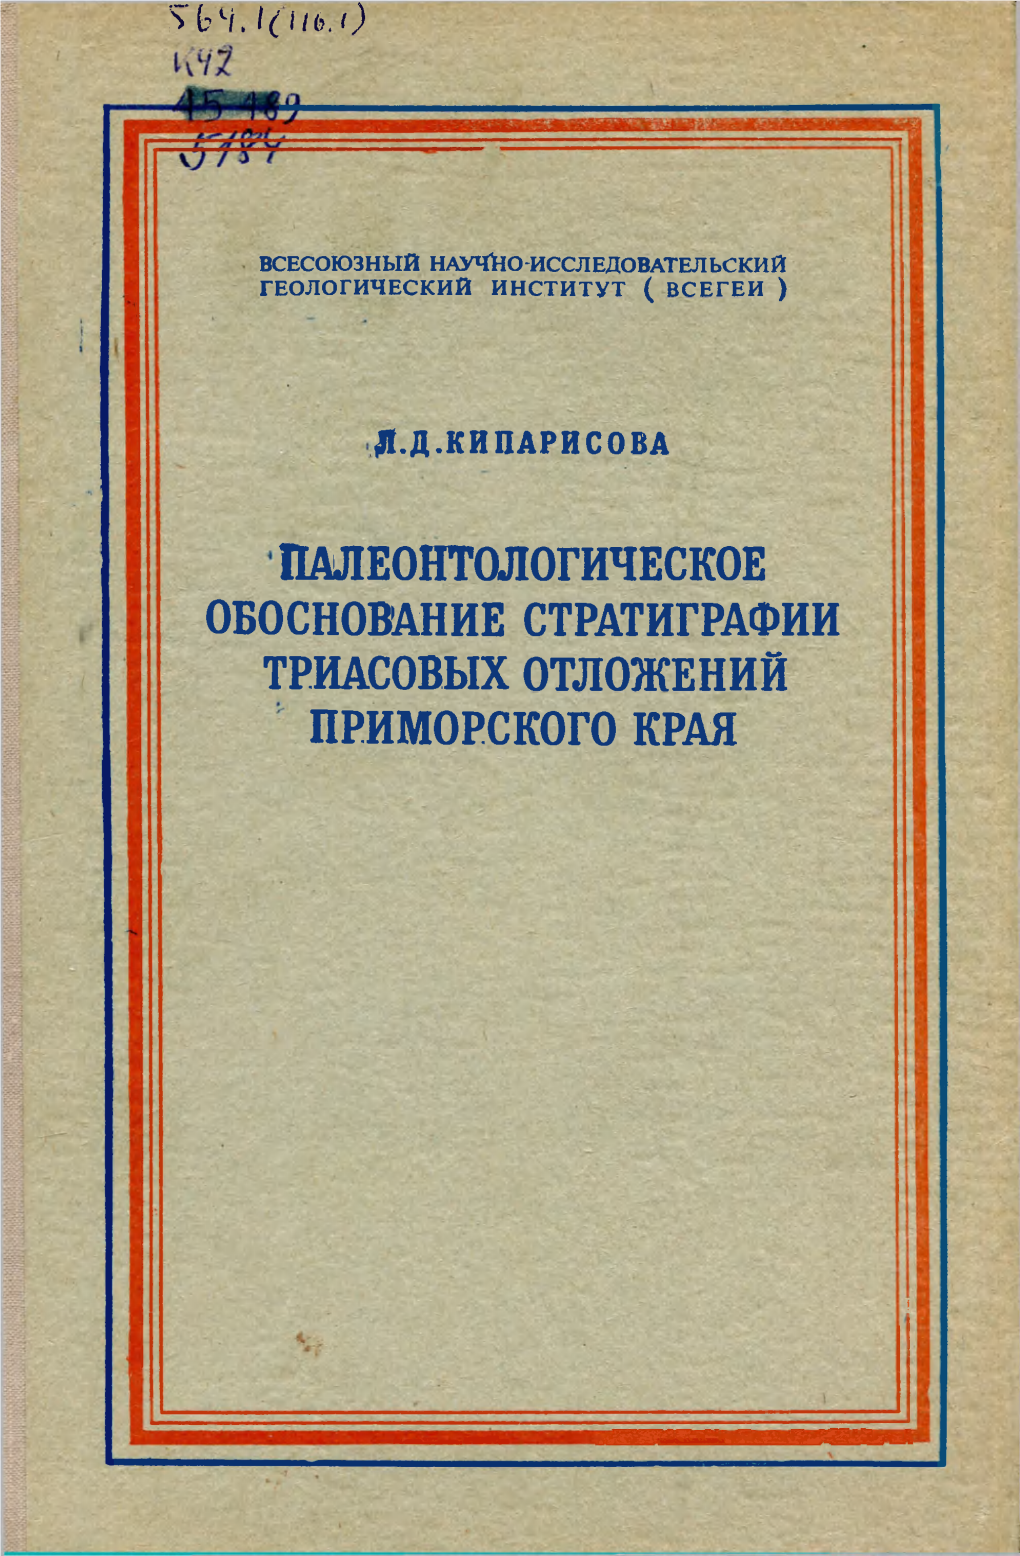 Eichwald, Eduard. Lethaea Rossica Ou Paléontologie De La Russie . Second Volume, Période Moyenne. Seconde Section. 1995